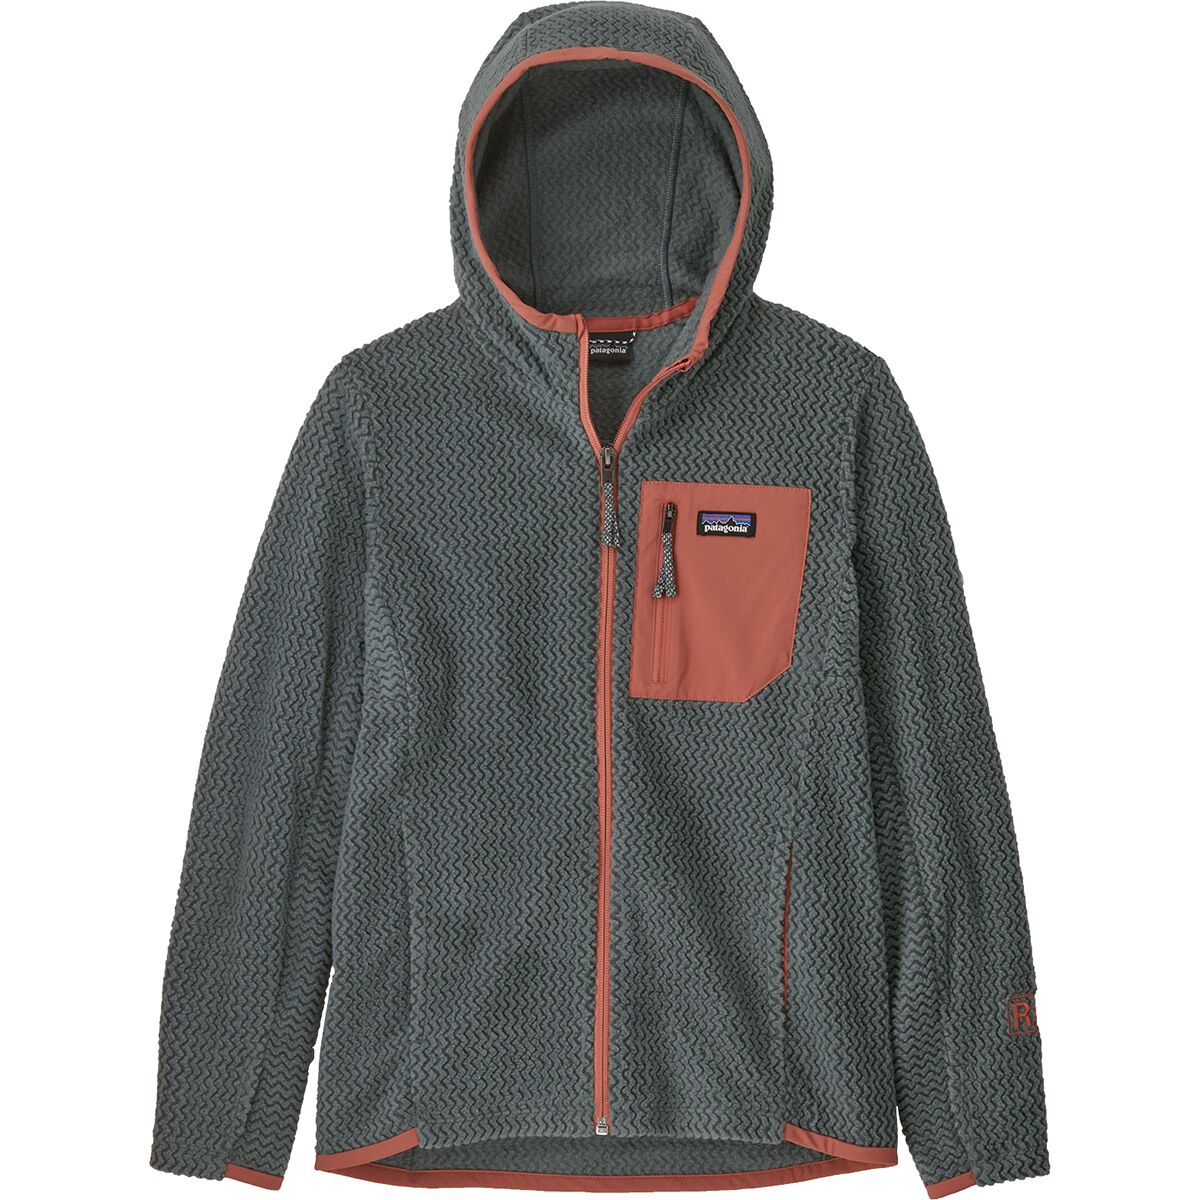 Patagonia R1 Air Full-Zip Hooded Jacket - Boys